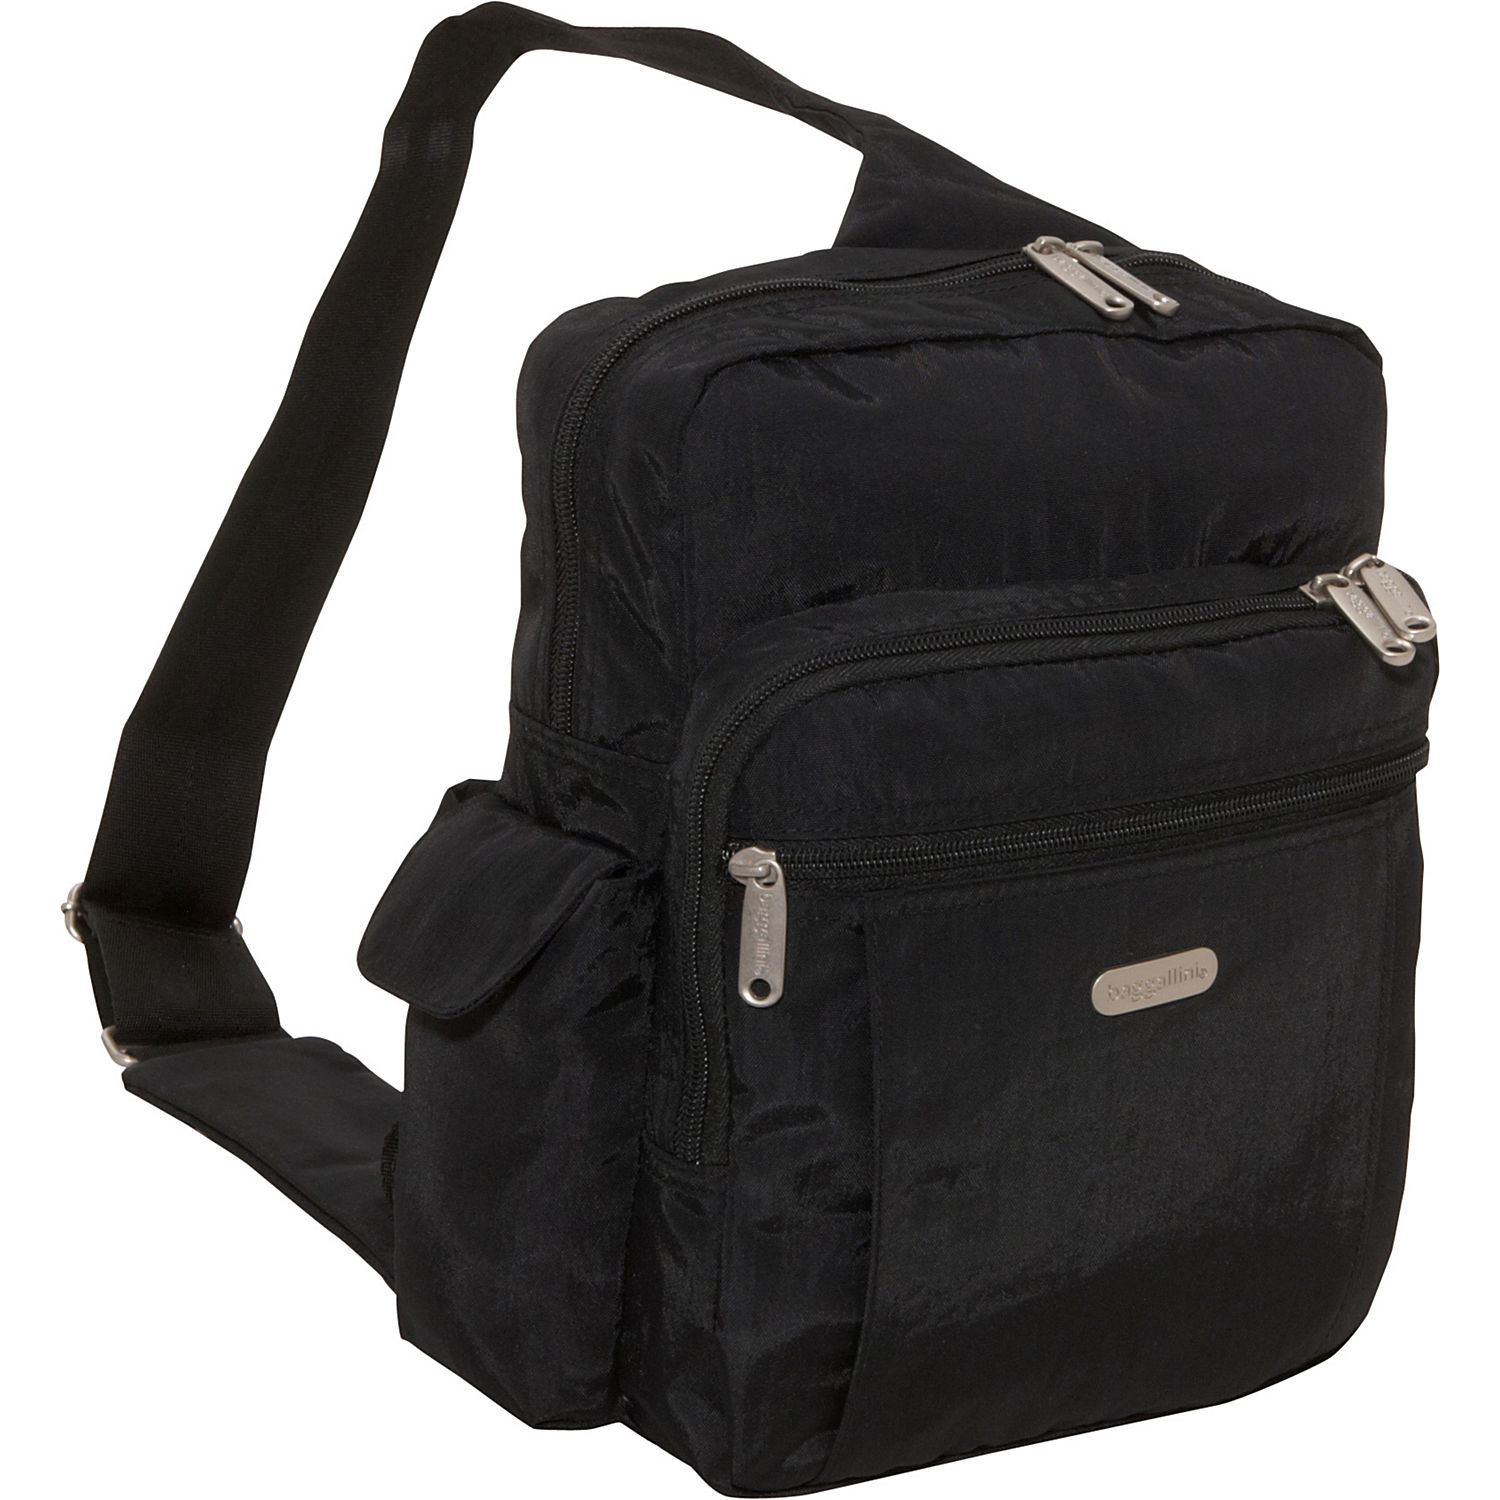 Baggallini Messenger Sling Bag. Baggallini Sling Messenger Backpack Shoulder Bag (Black/Sand).